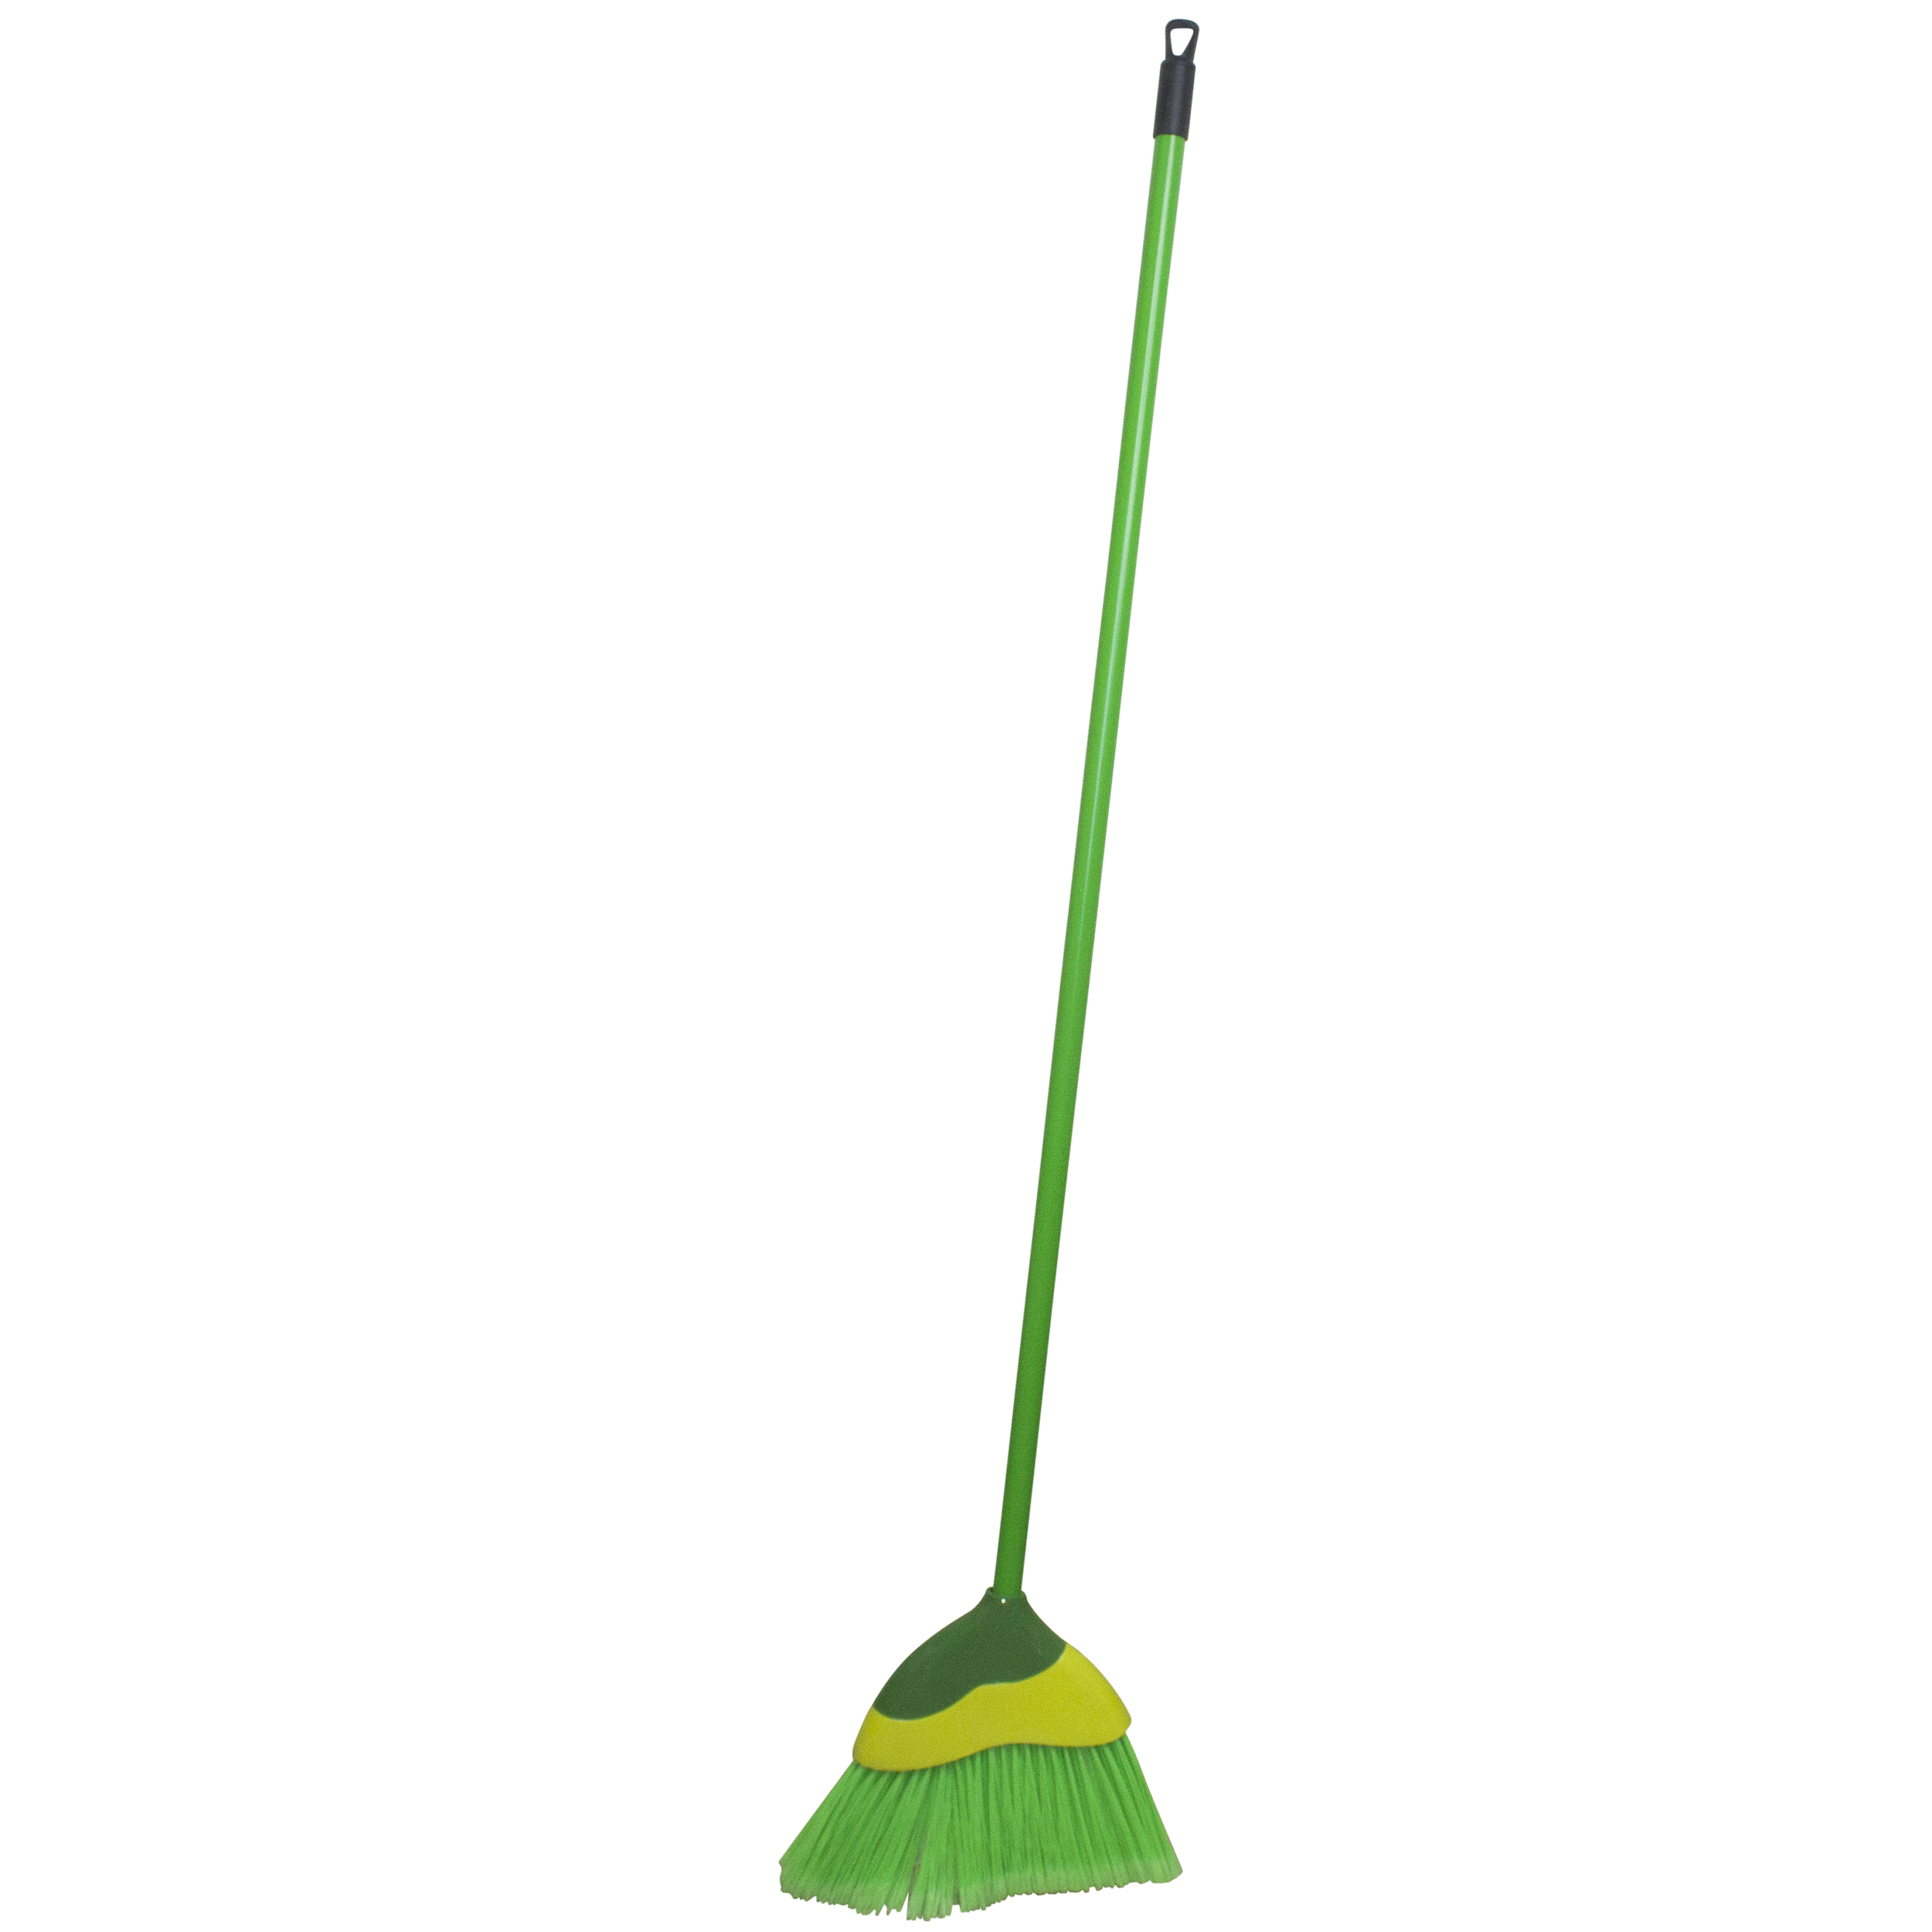 IMUSA IMUSA Angled Broom with Metal Handle, Green - IMUSA